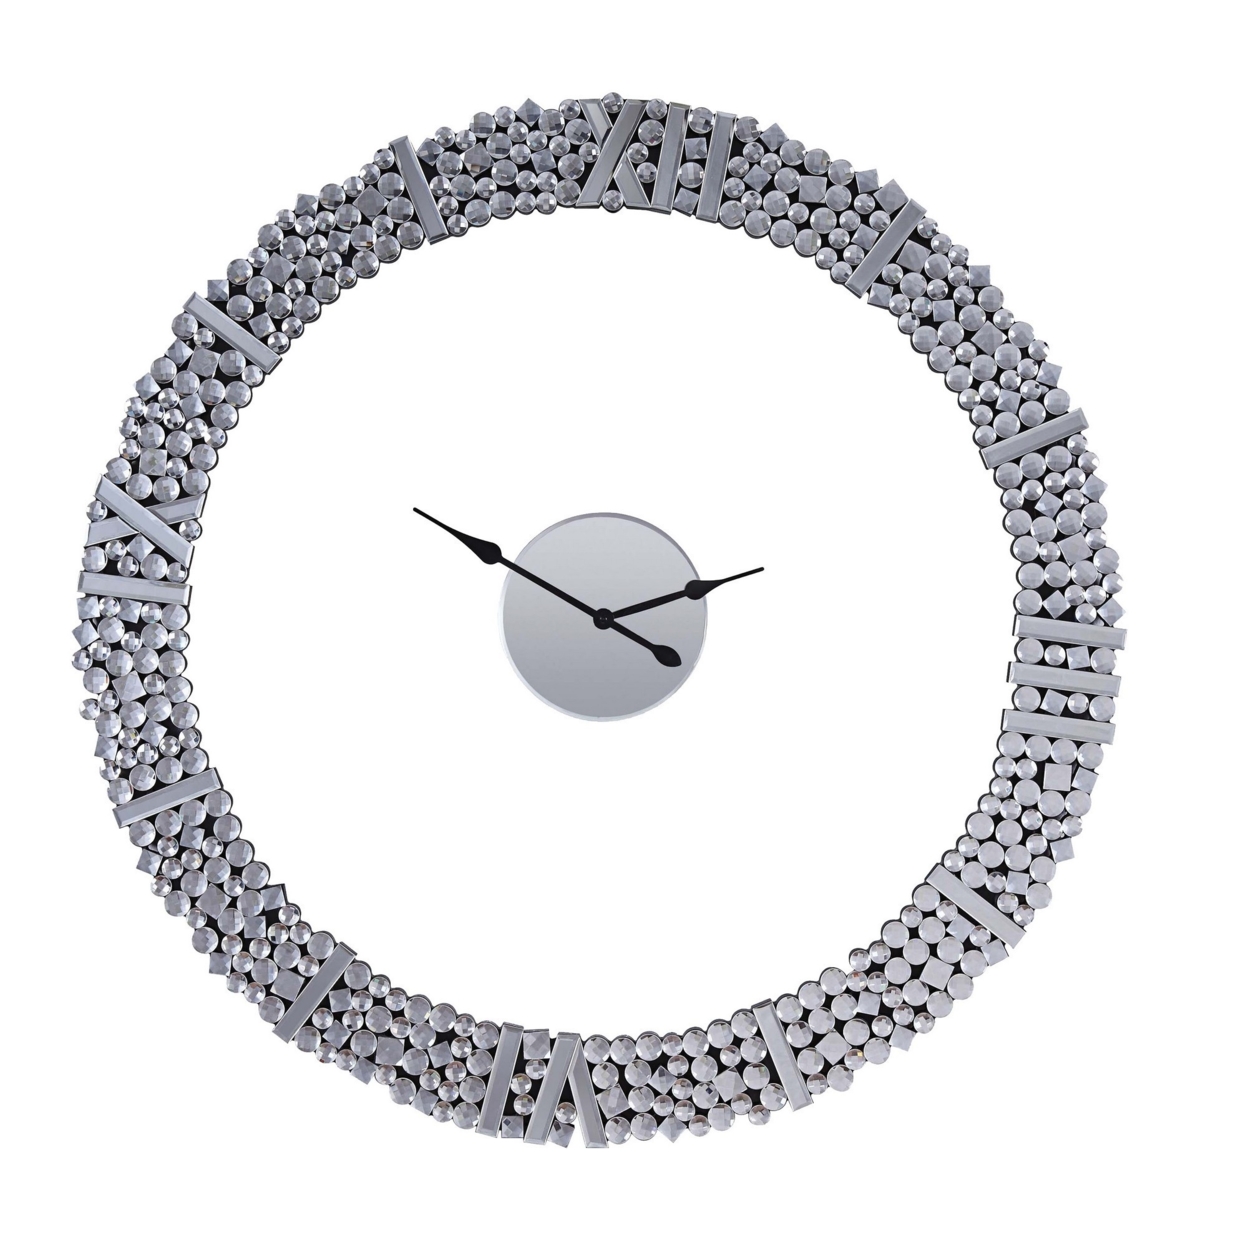 39 Inch Modern Analog Wall Clock, Faux Gem Inlay, Quartz, Silver- Saltoro Sherpi